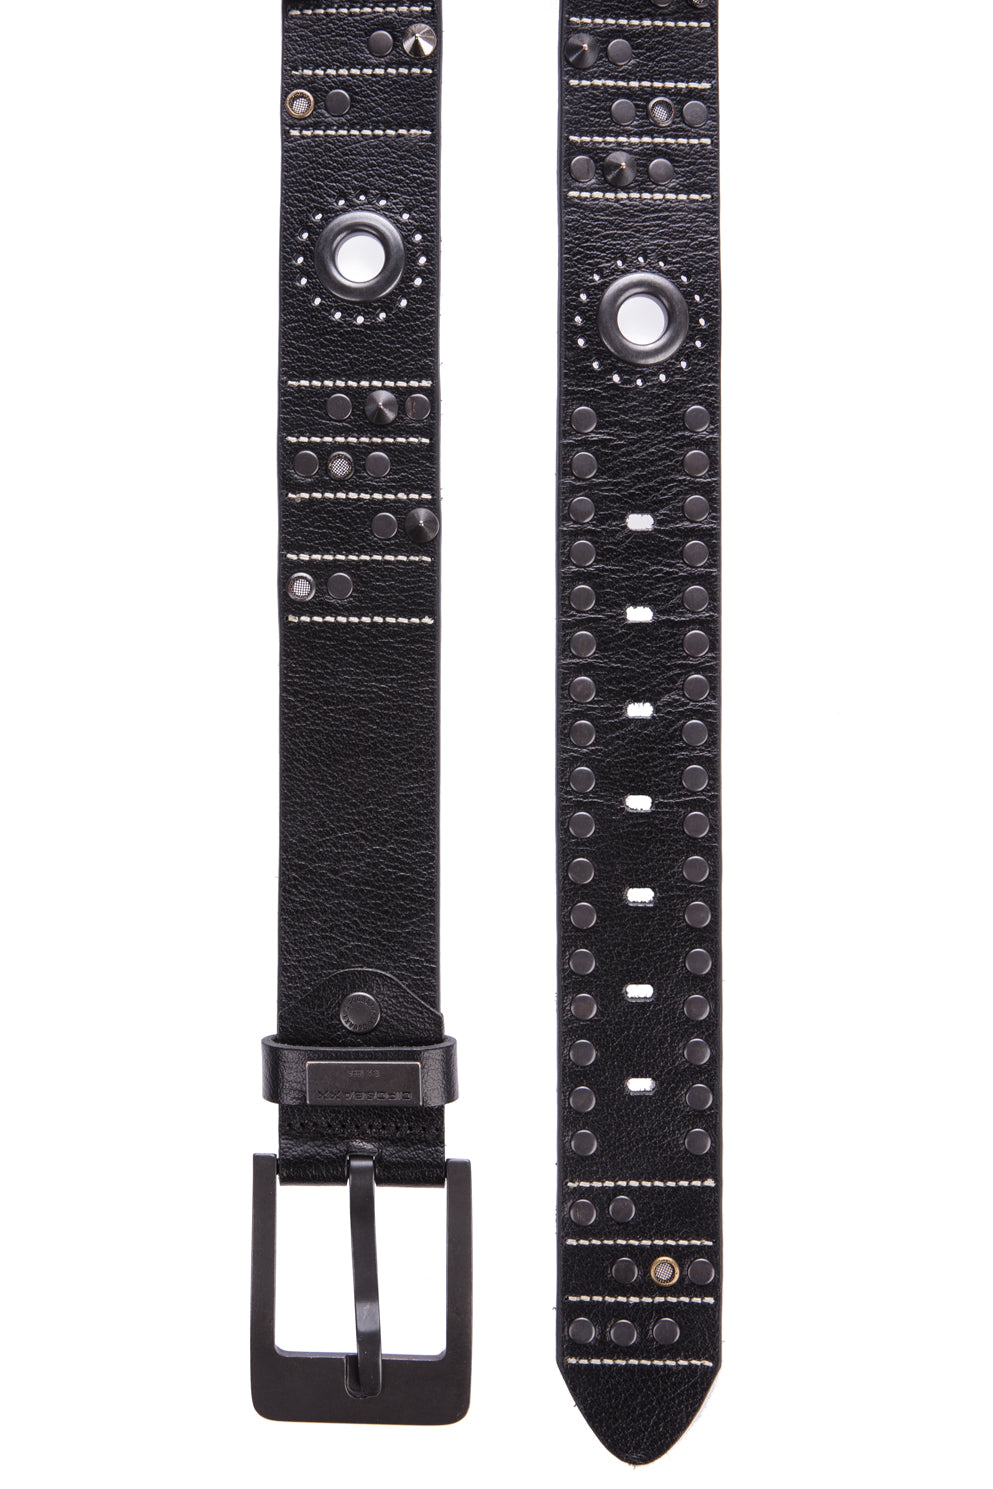 Cinturones de cuero para hombres CG162 con elegantes aplicaciones de remaches